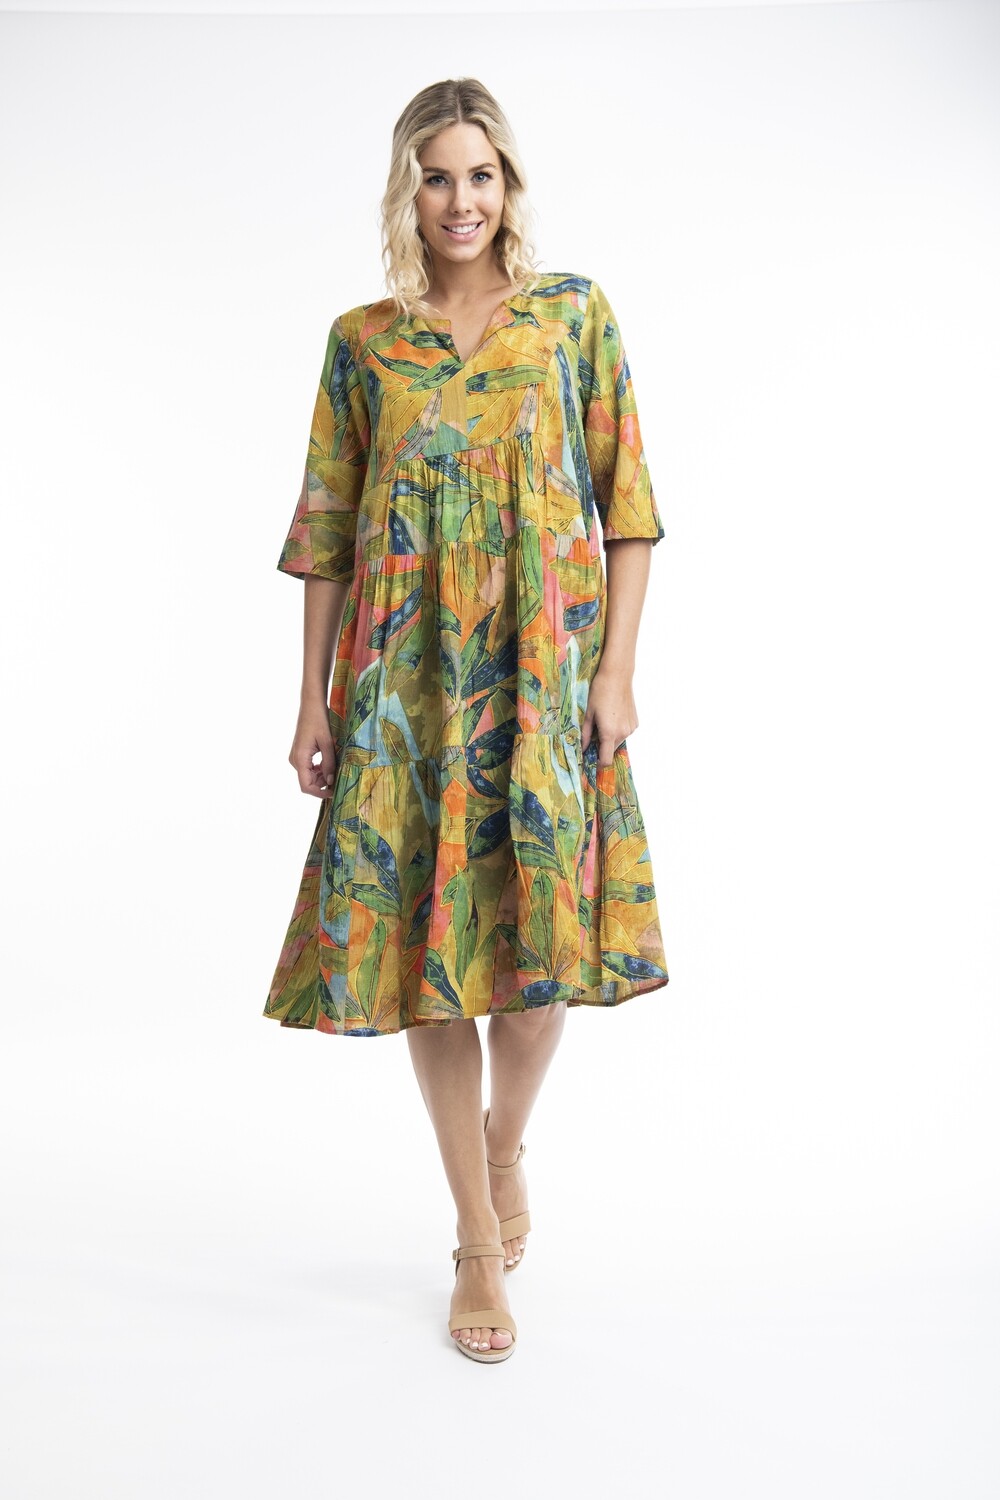 Orientique jurk print 81242, Size: 46